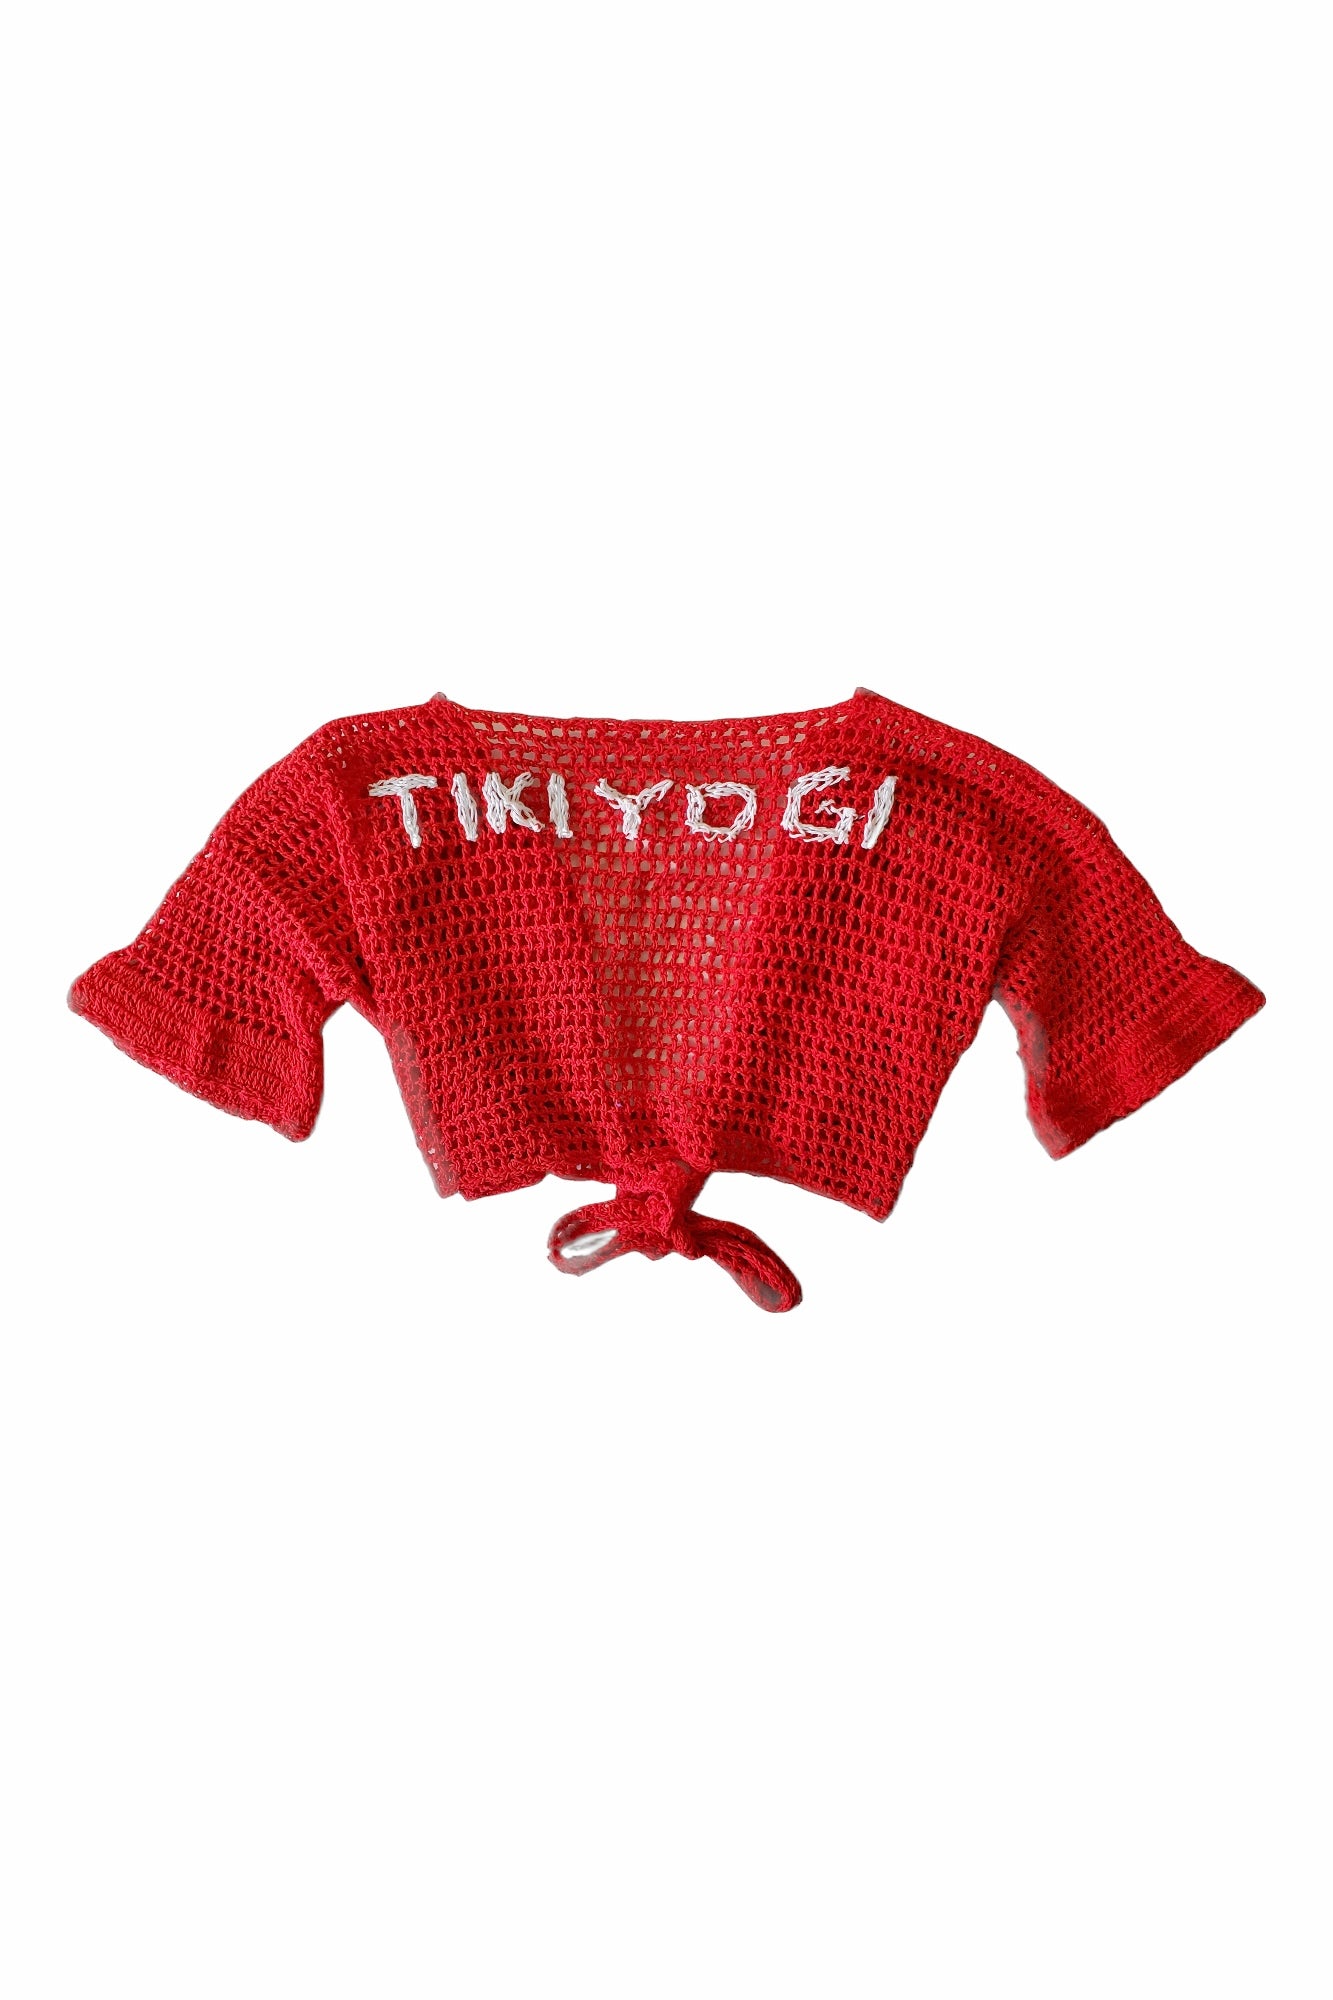 TIKIYOGI Iconic Flower Red Crochet Bolero, Handmade.